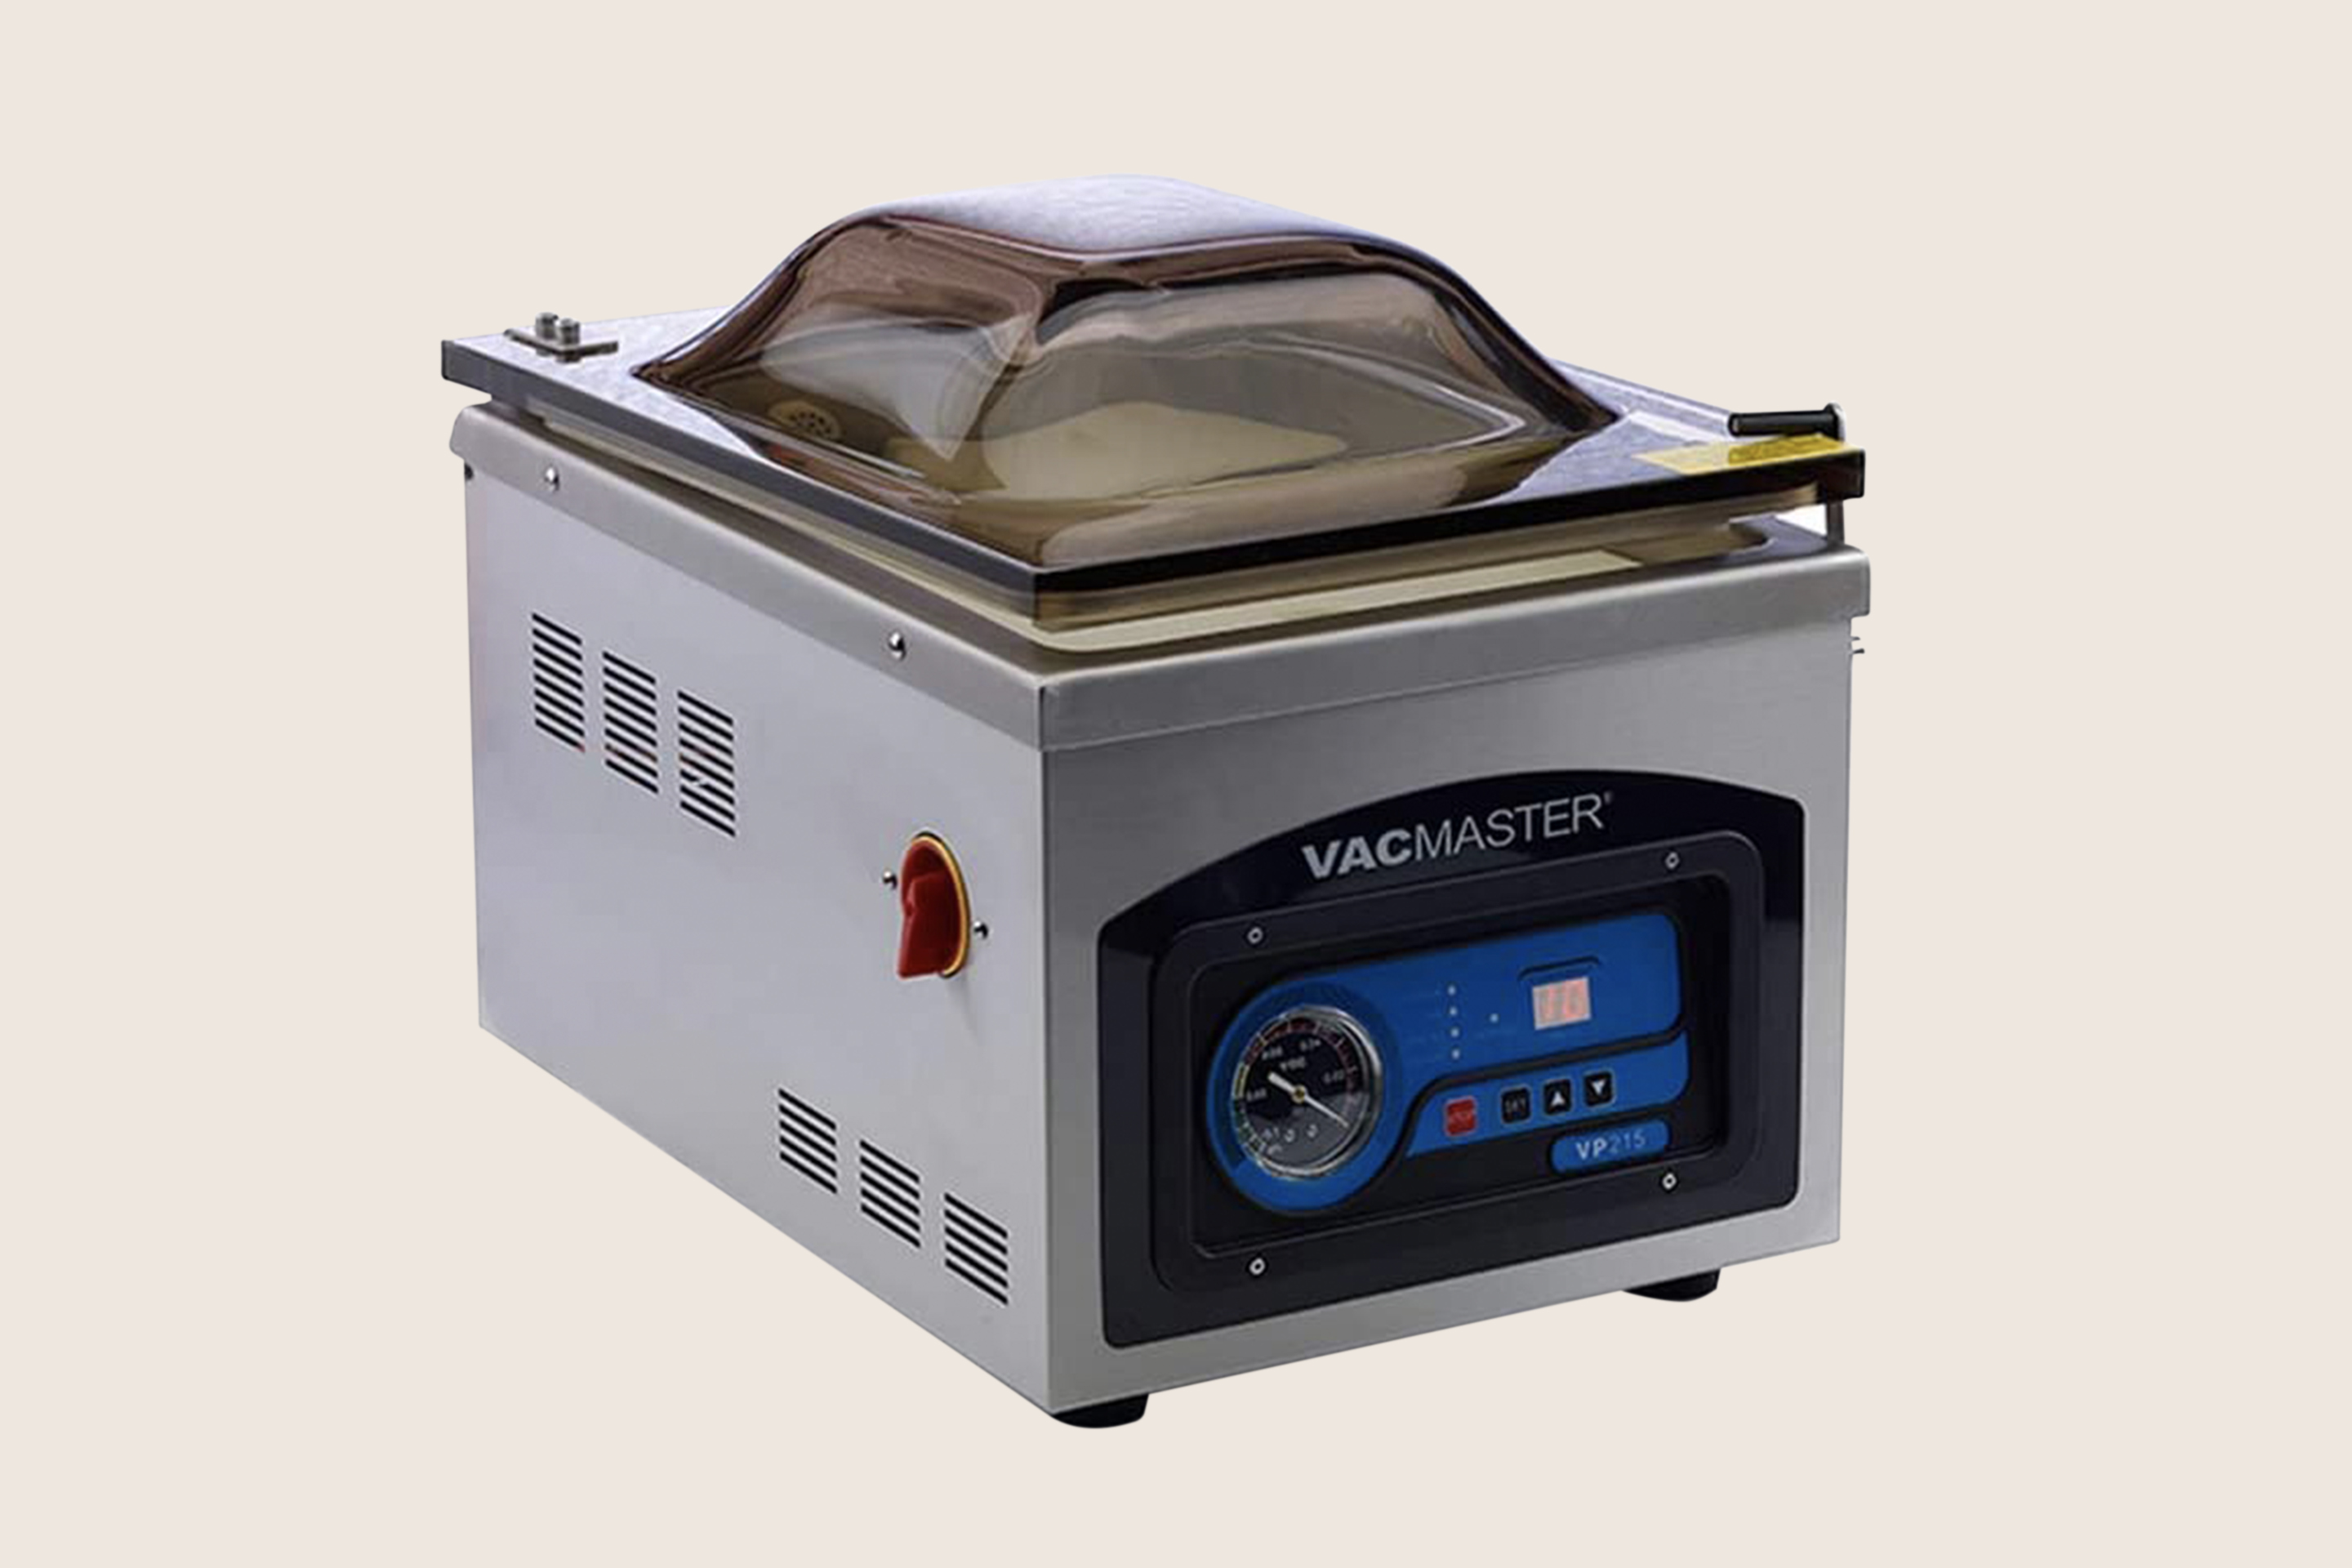 Mueller MFFVS-01 Vacuum Sealer Machine User Guide